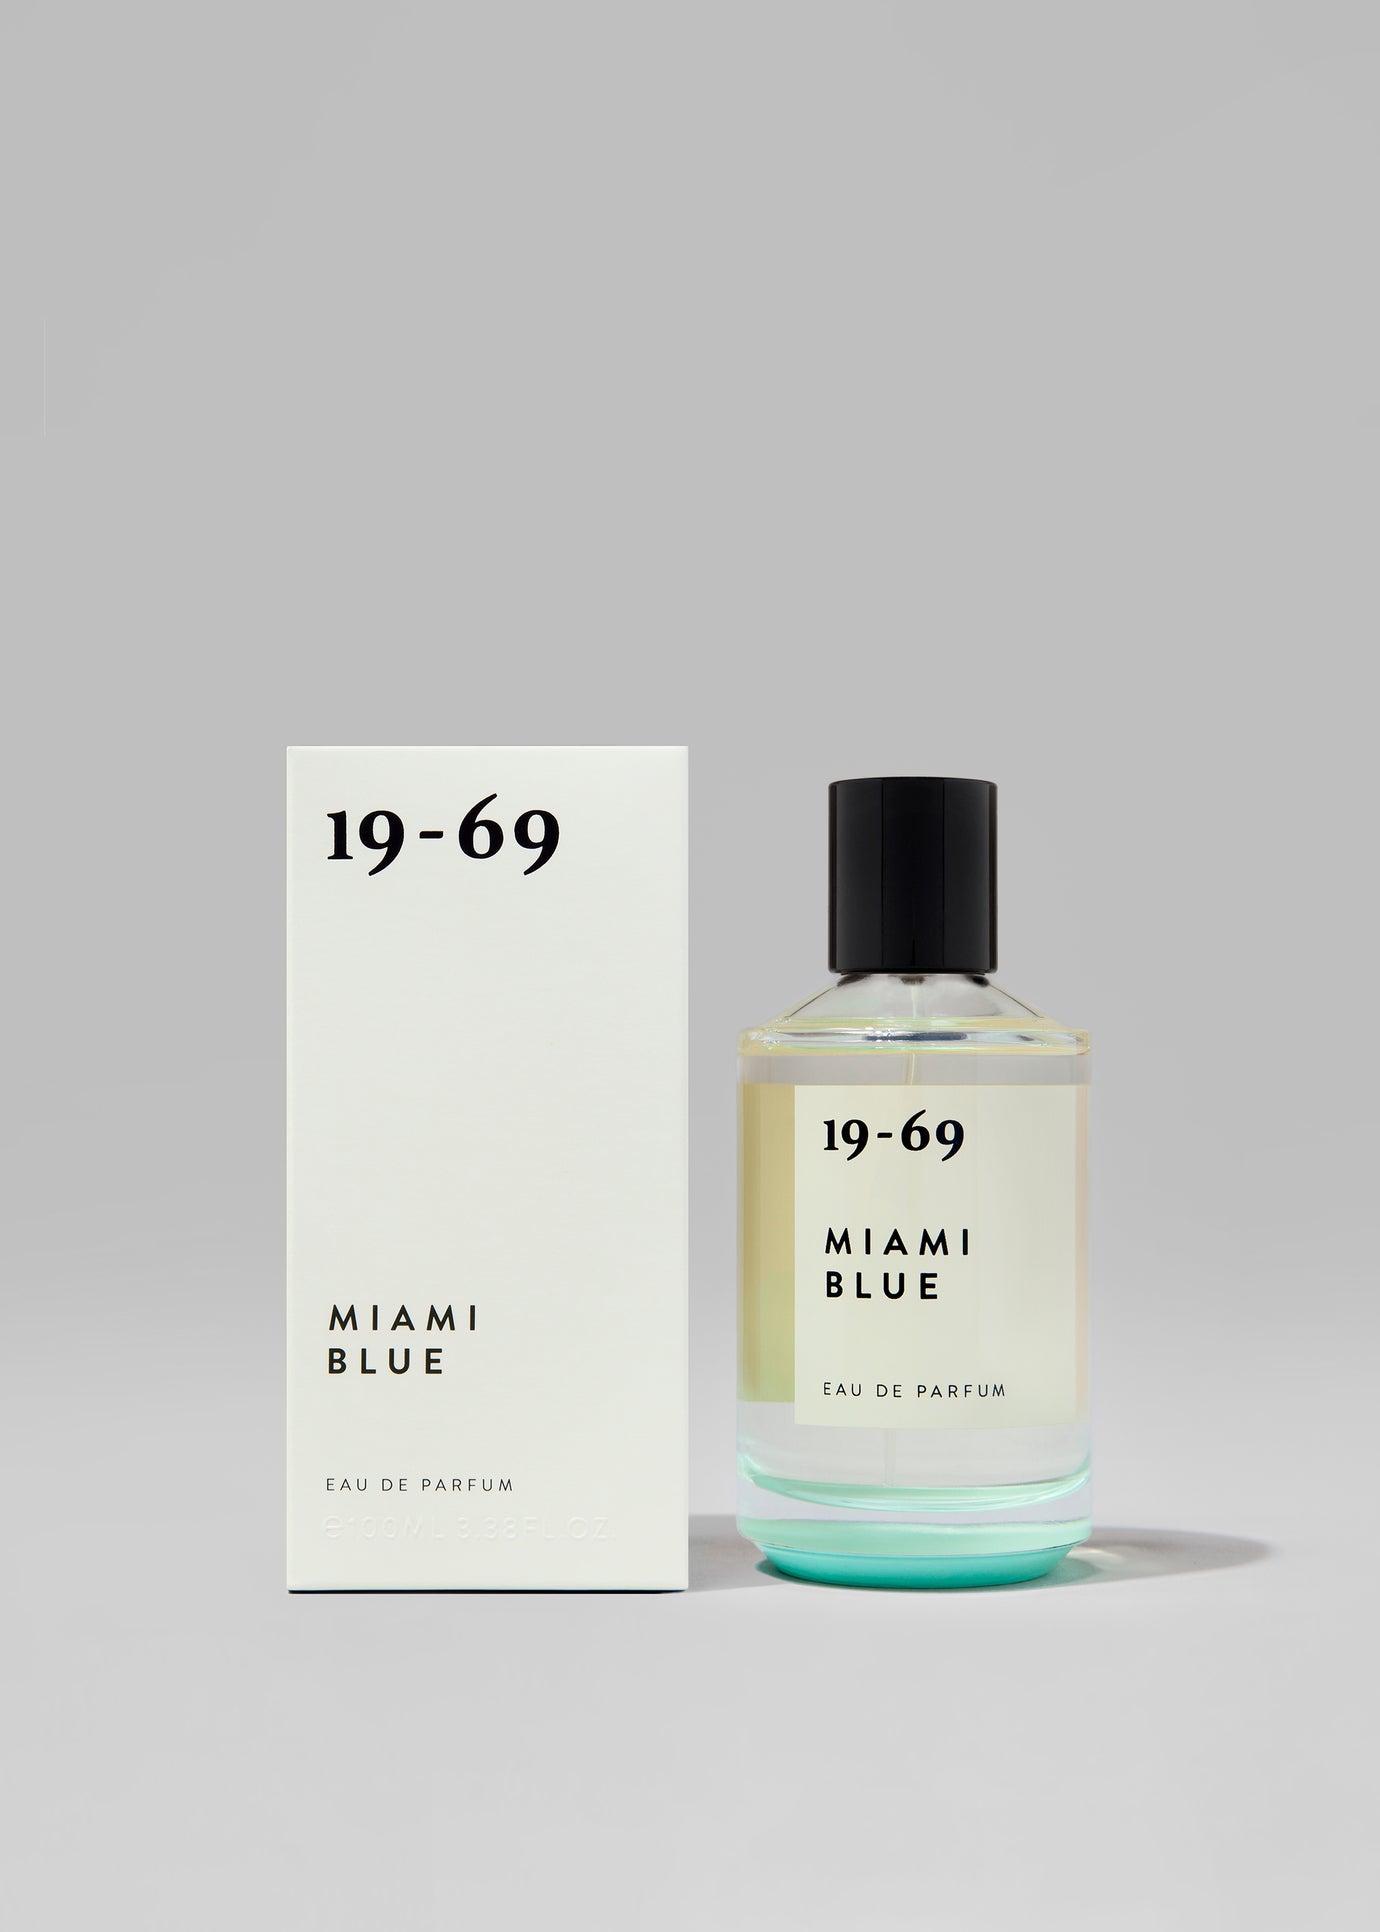 19-69 Miami Blue Eau de Parfum - 1